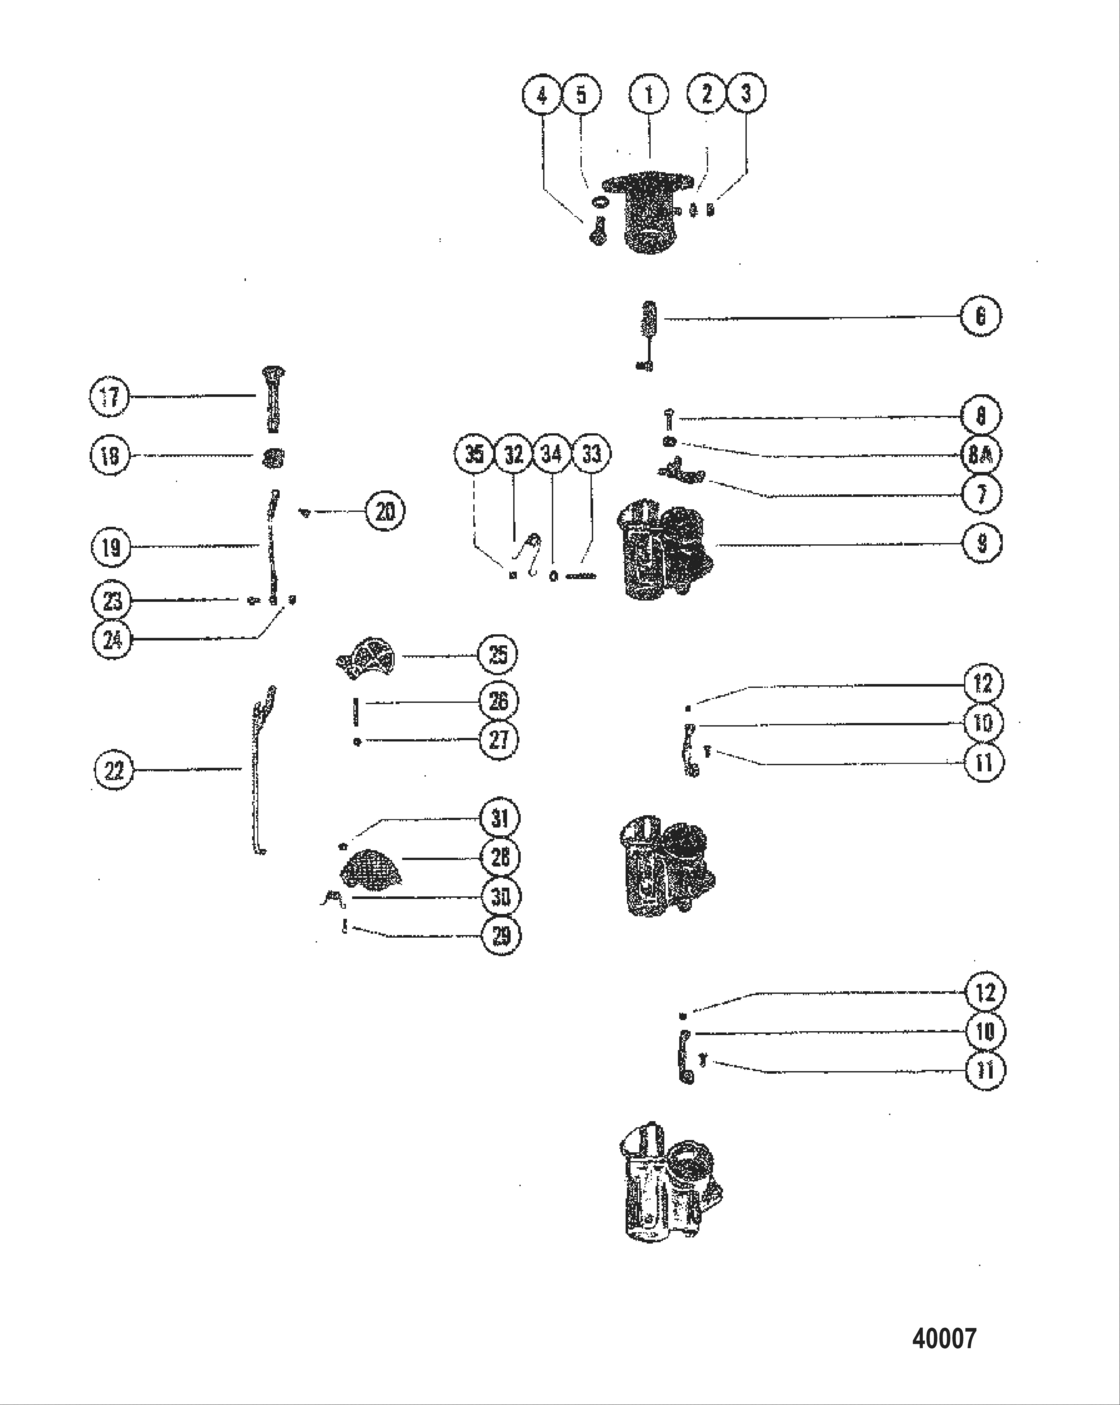 Carburetor Linkage And Choke Solenoid